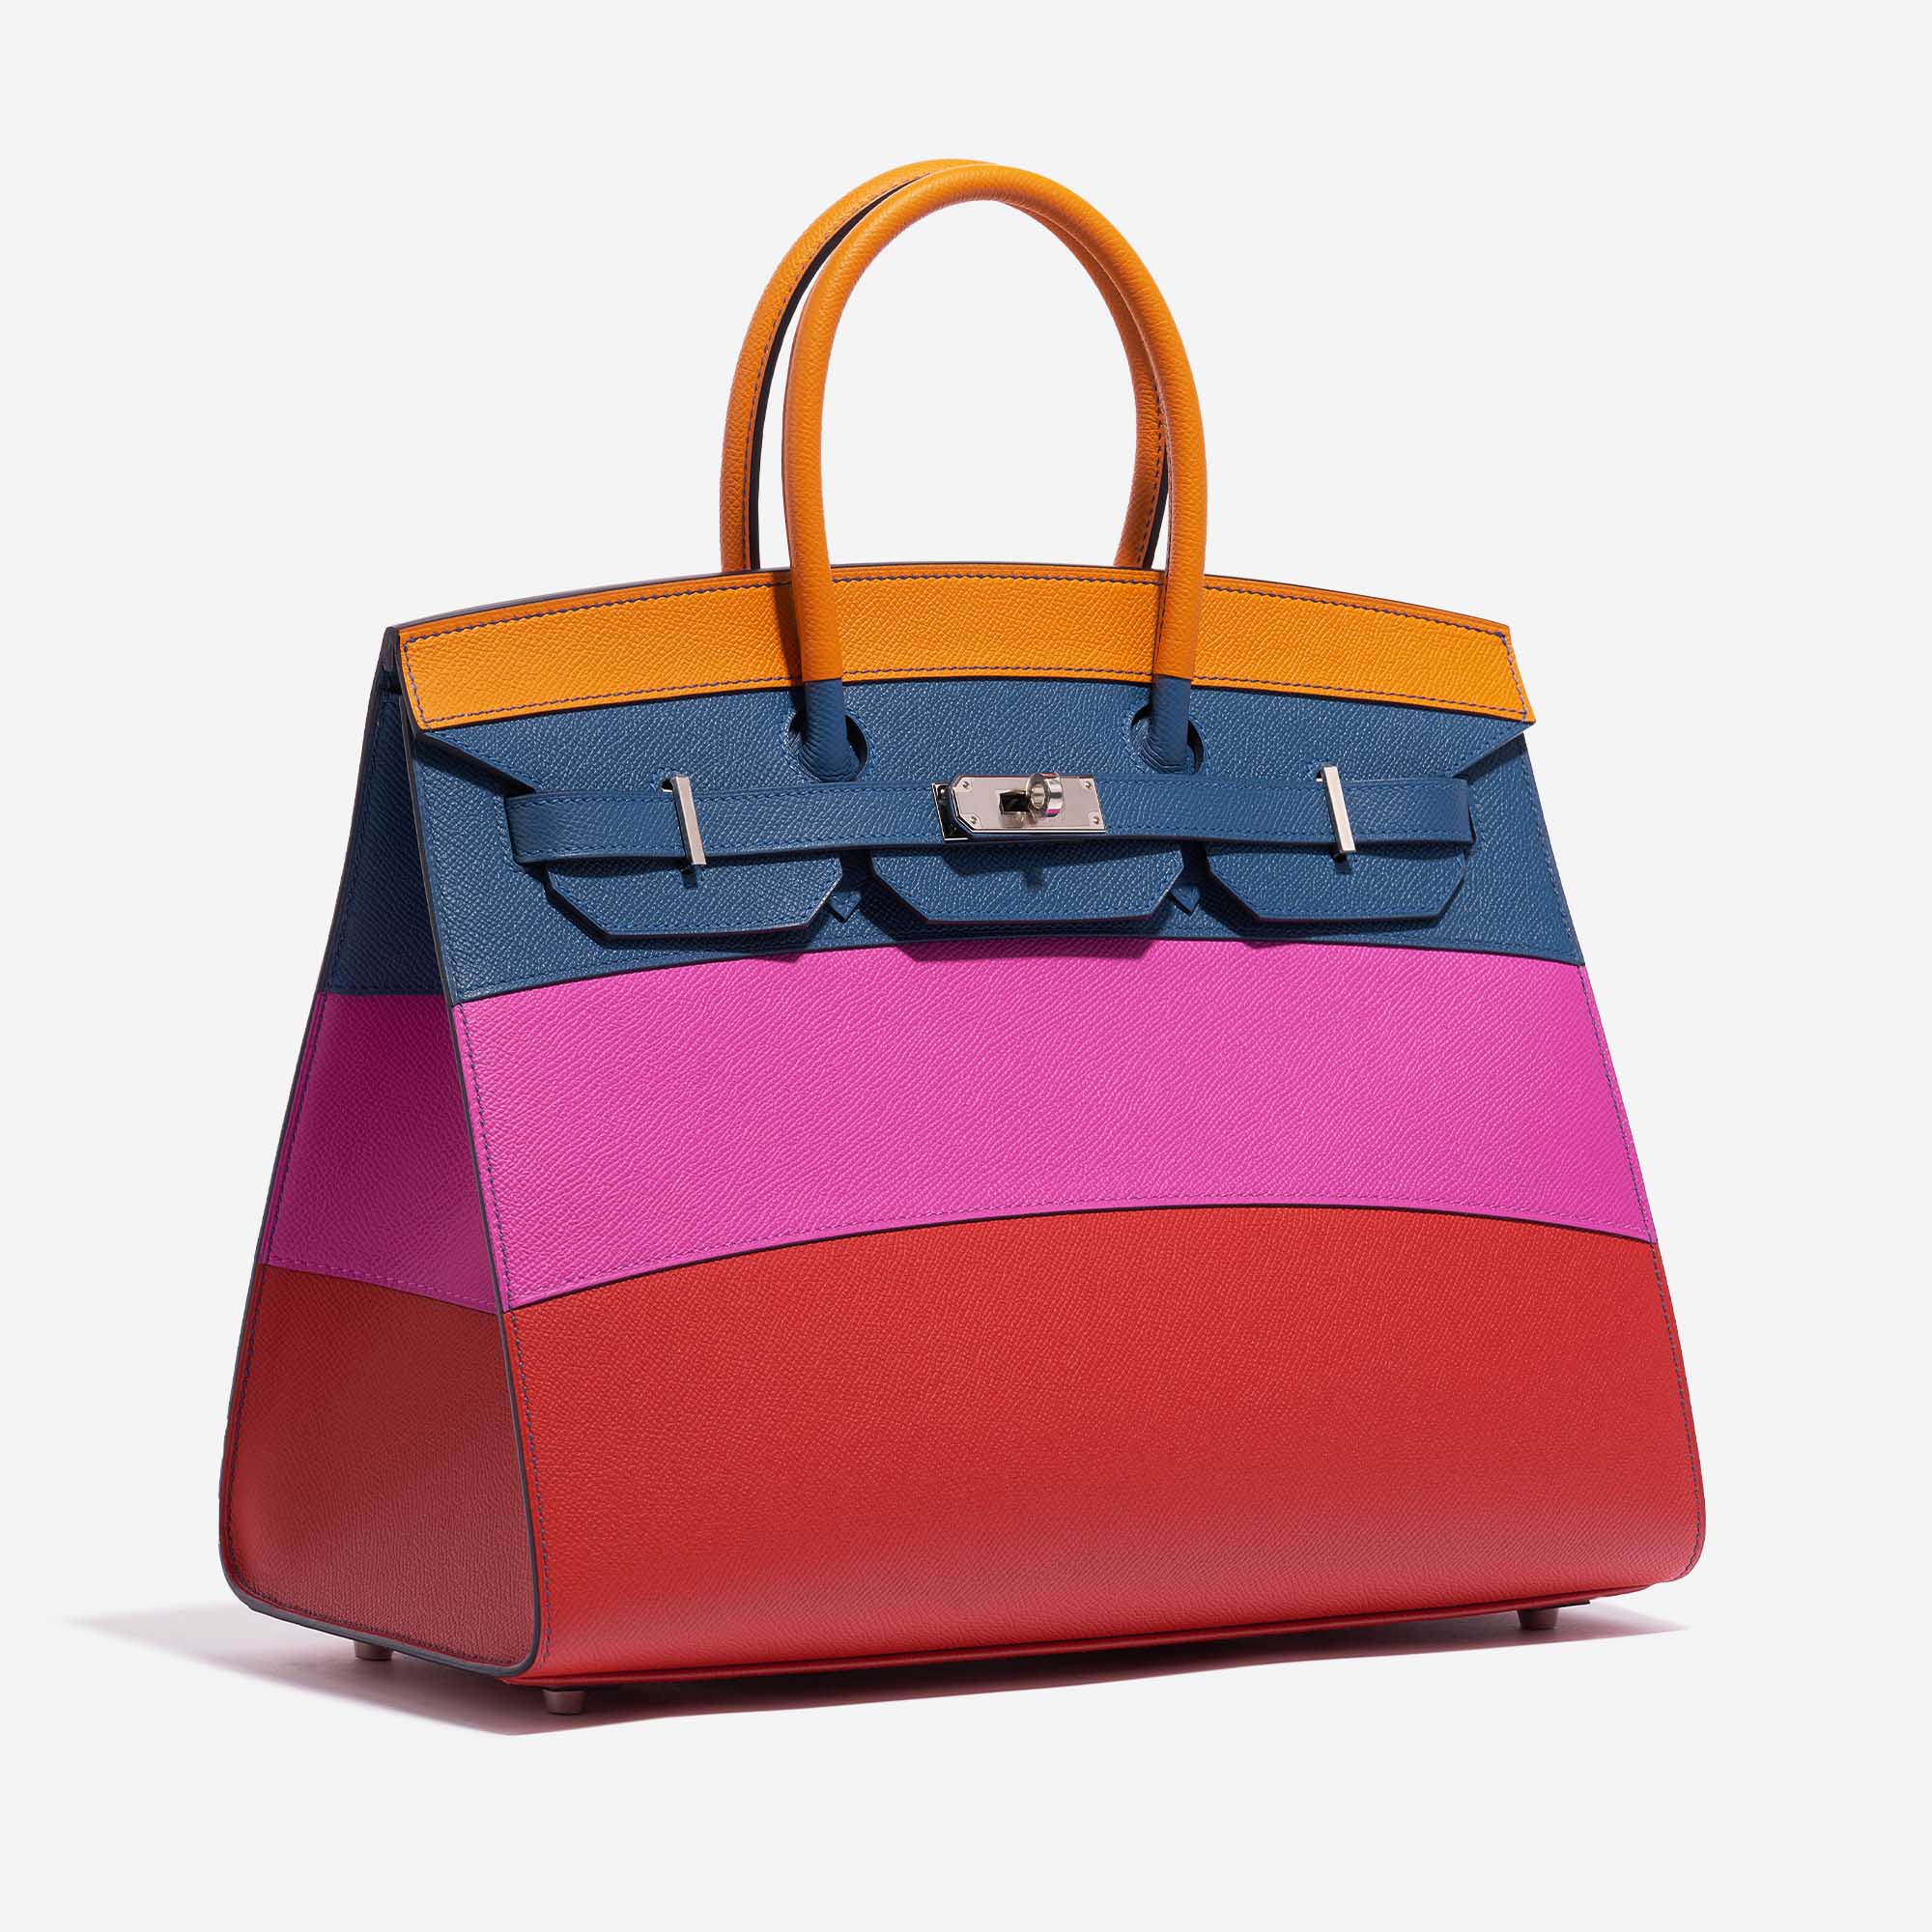 Gebrauchte Hermès Tasche Birkin 35 Sunset Rainbow Epsom Apricot / Blue Achat / Magnolia / Rouge Casaque Multicolour Side Front | Verkaufen Sie Ihre Designer-Tasche auf Saclab.com